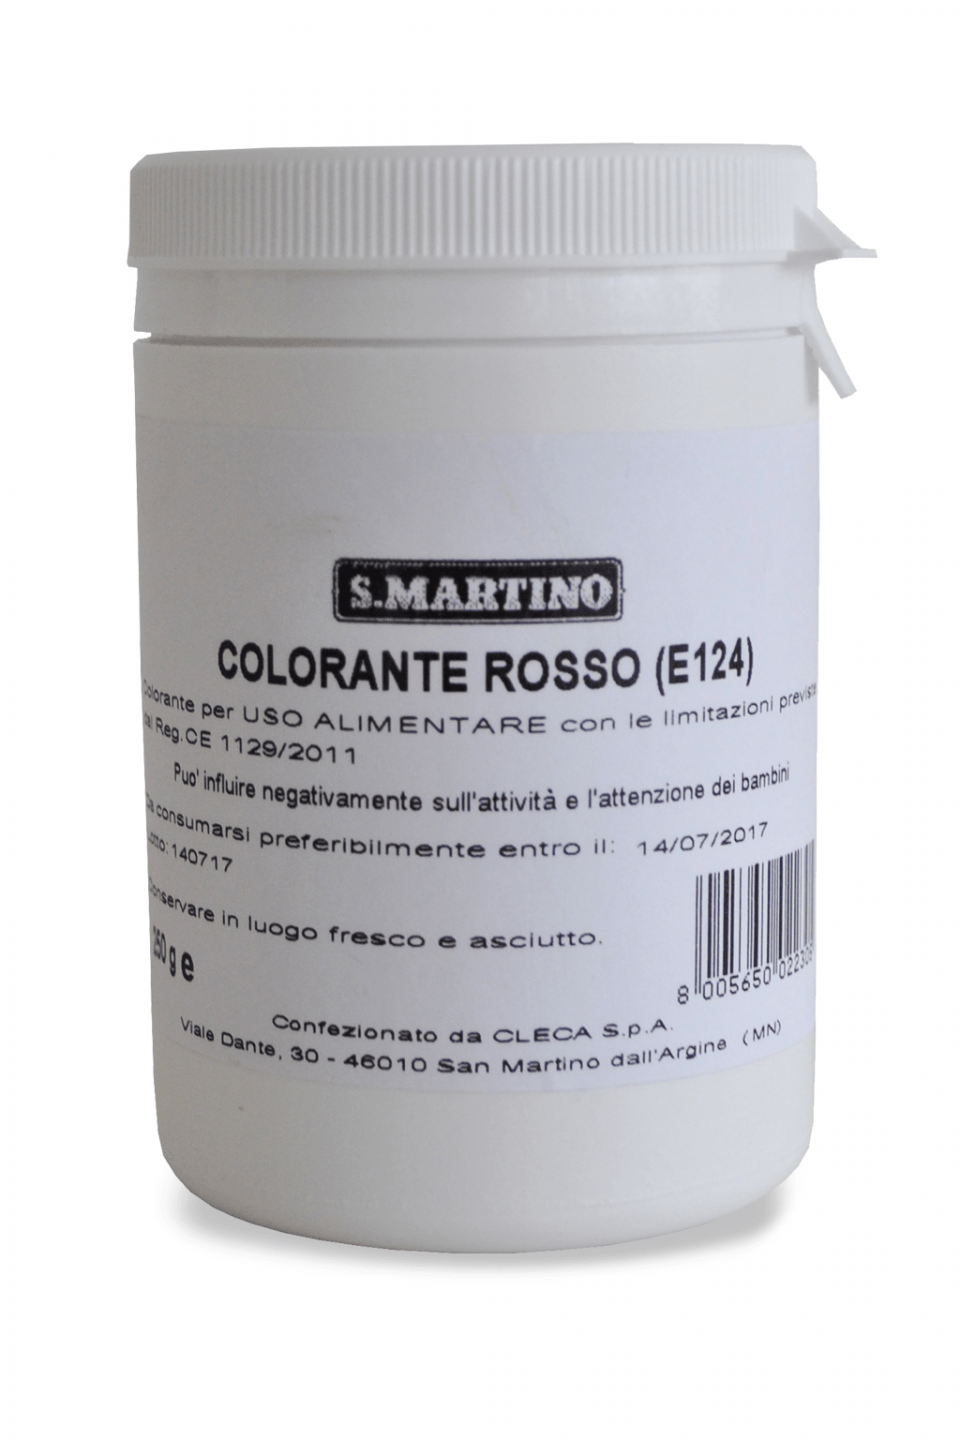 S.MARTINO Colorante rosso 250g